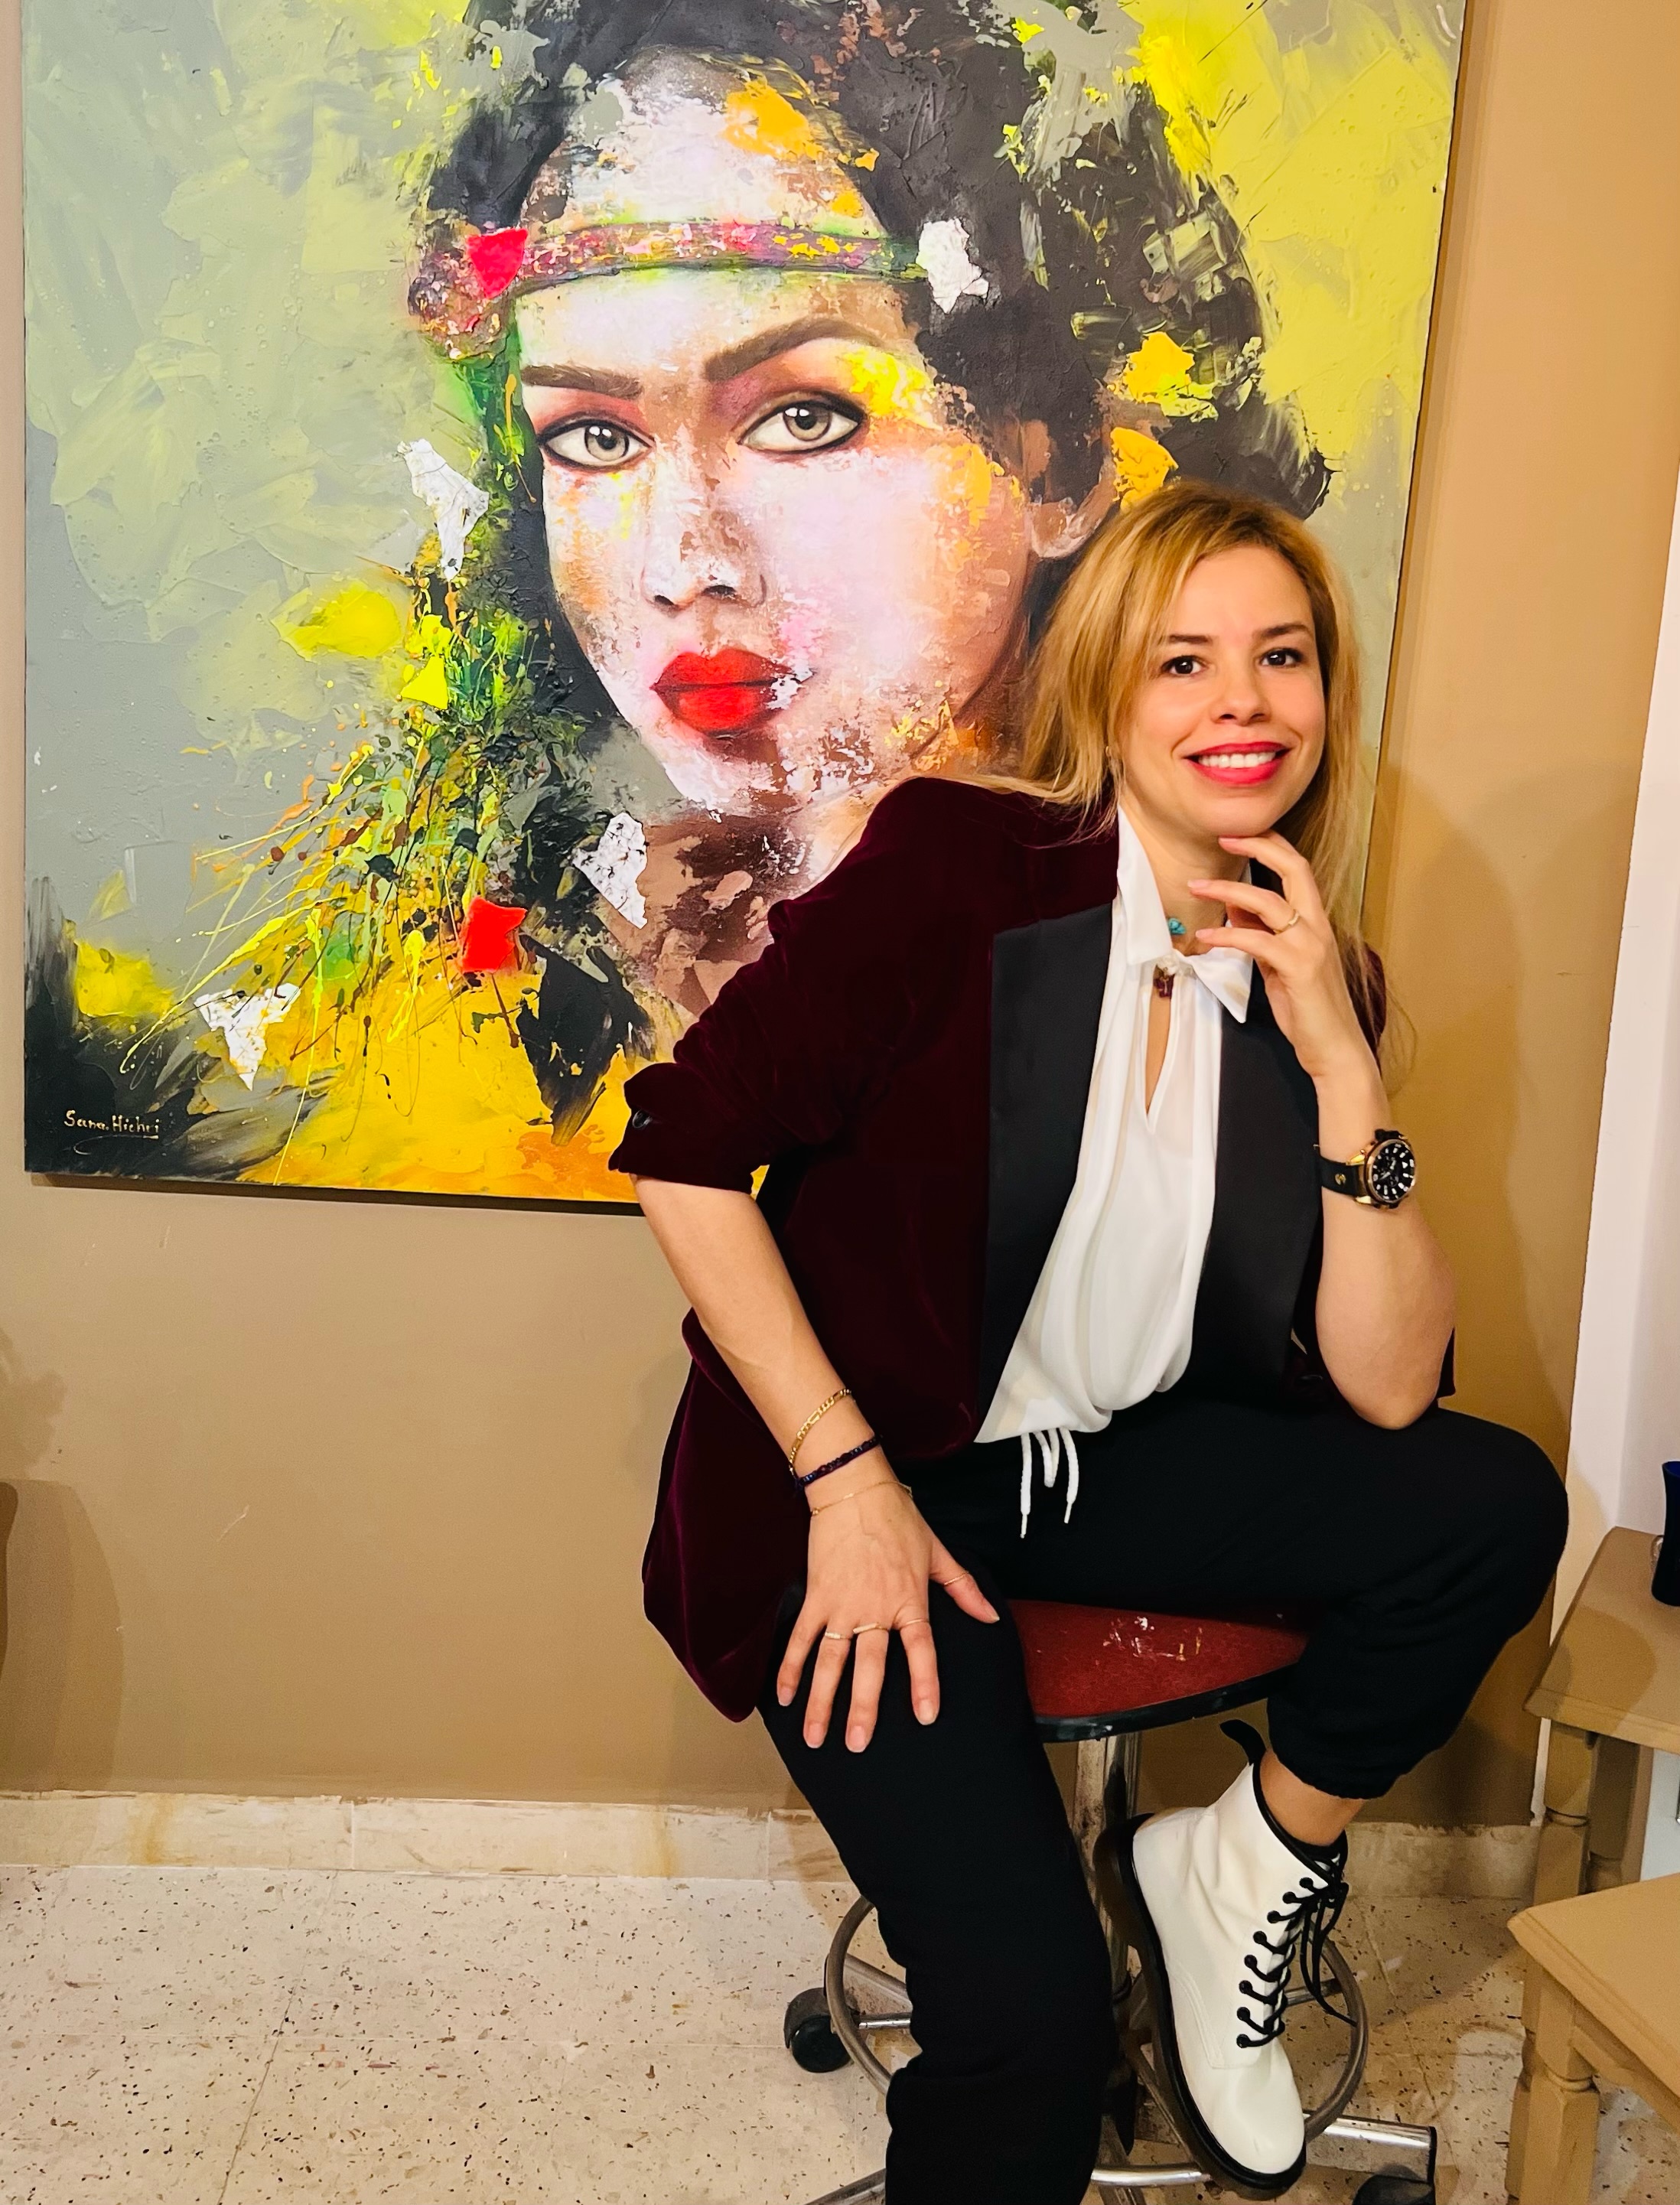 سناء هيشري: أرسم بالألوان نضال المرأة العربيّة!